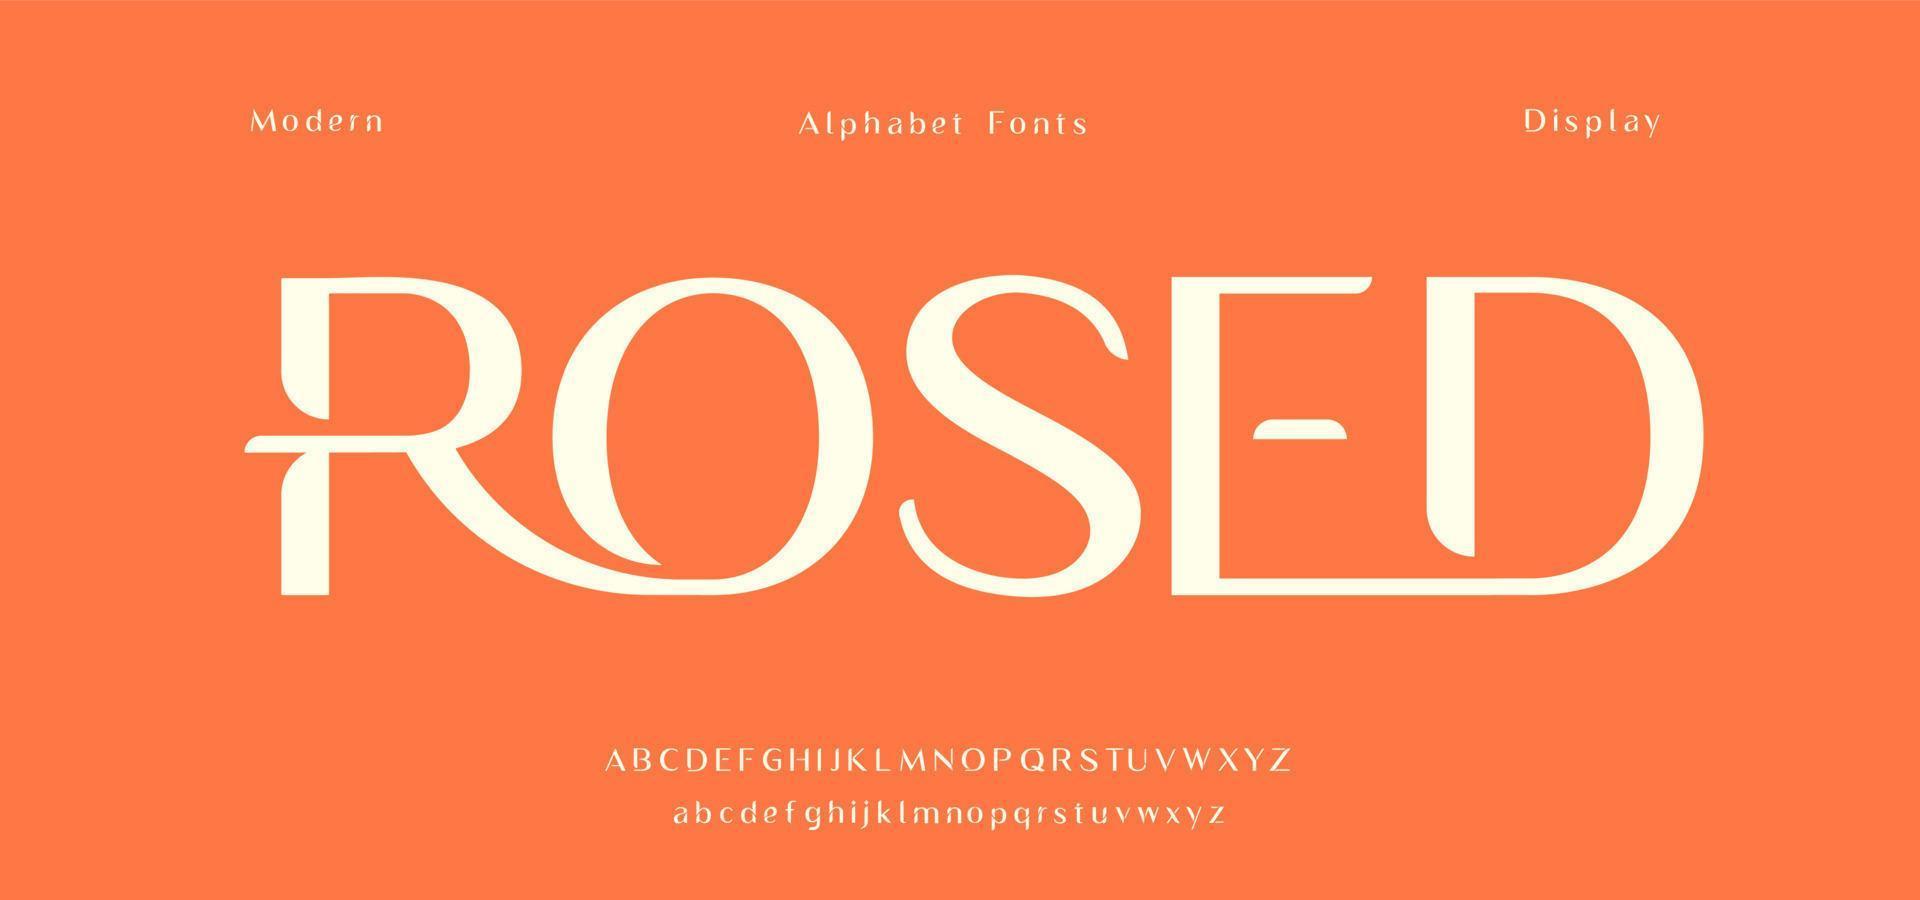 moderne display alfabet letters. stedelijke stijlvolle lettertype tijdschrift typografie vector